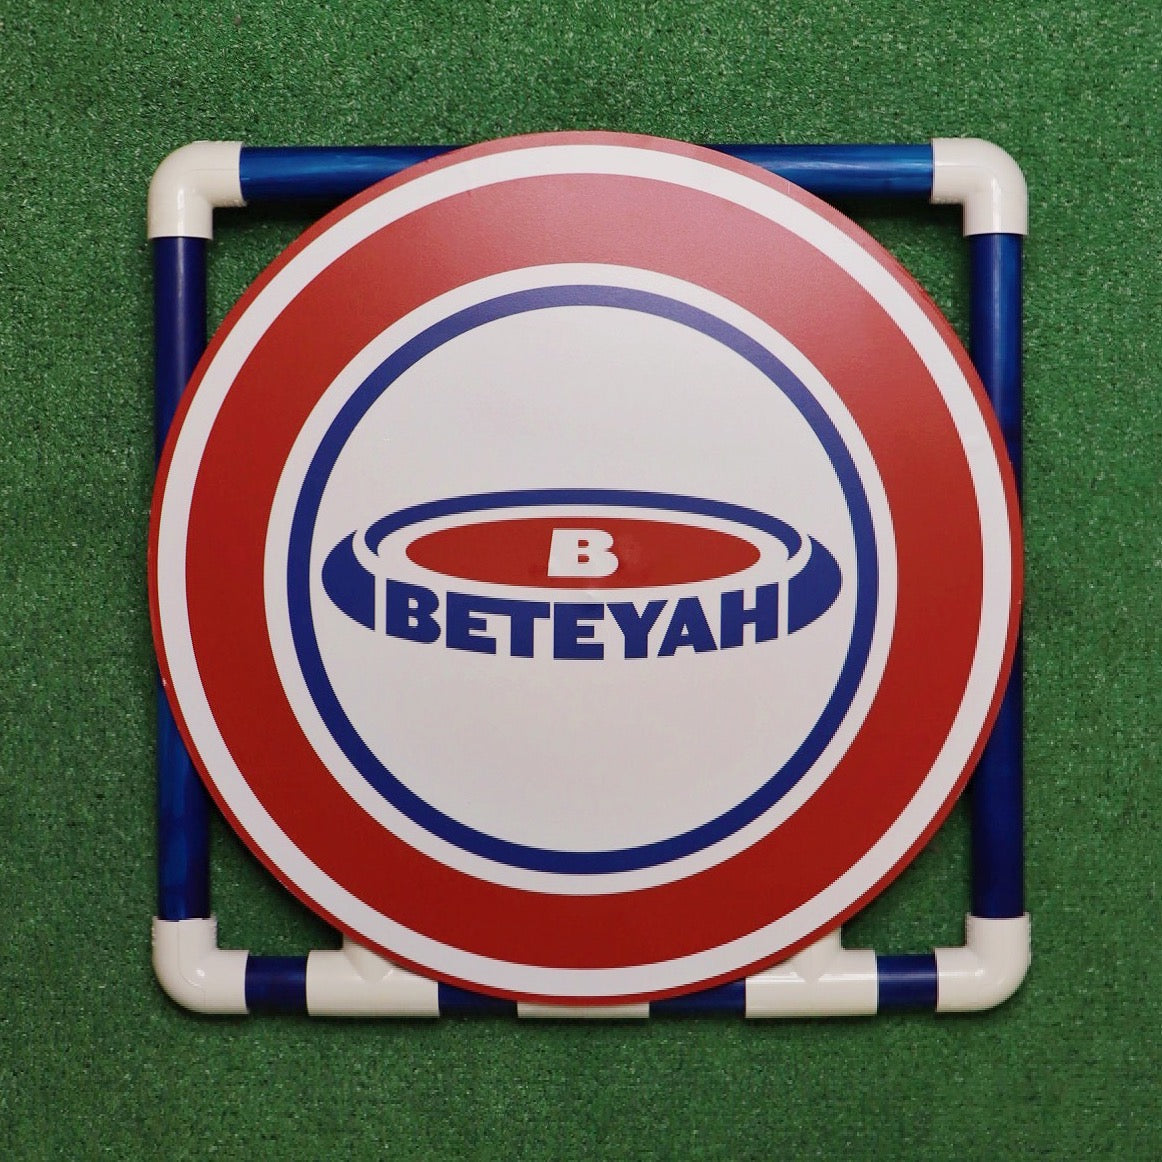 The Official BETEYAH Set